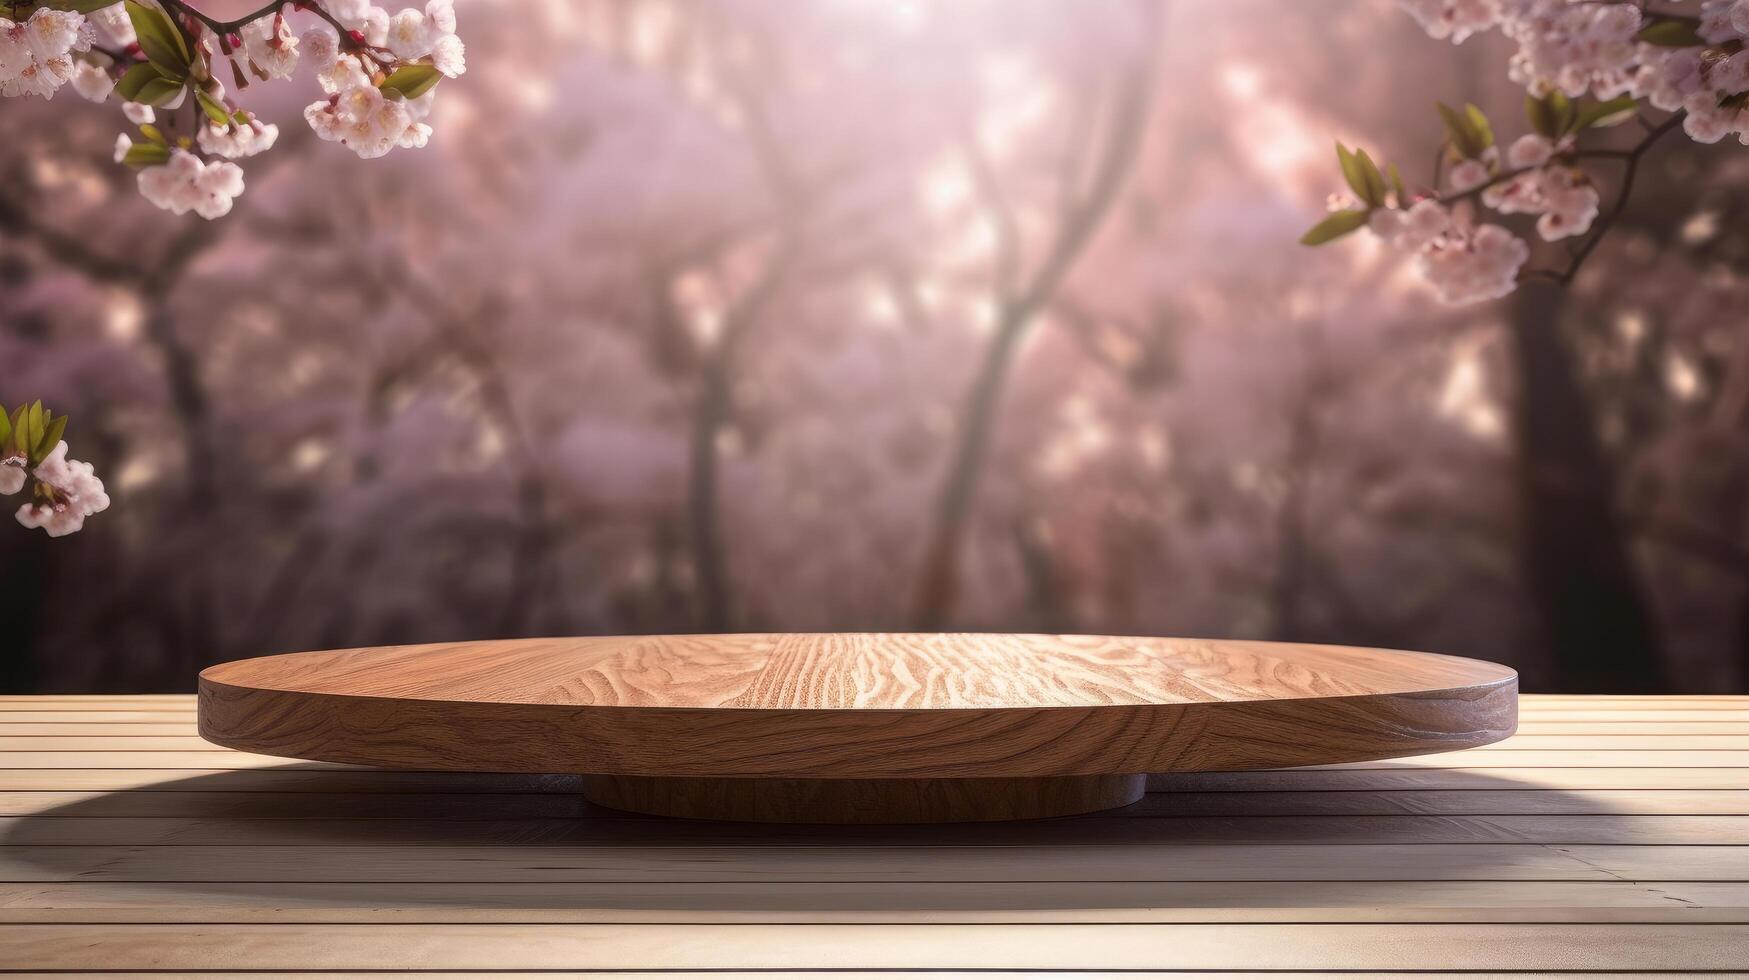 Empty wooden table with sakura flowers. Illustration photo